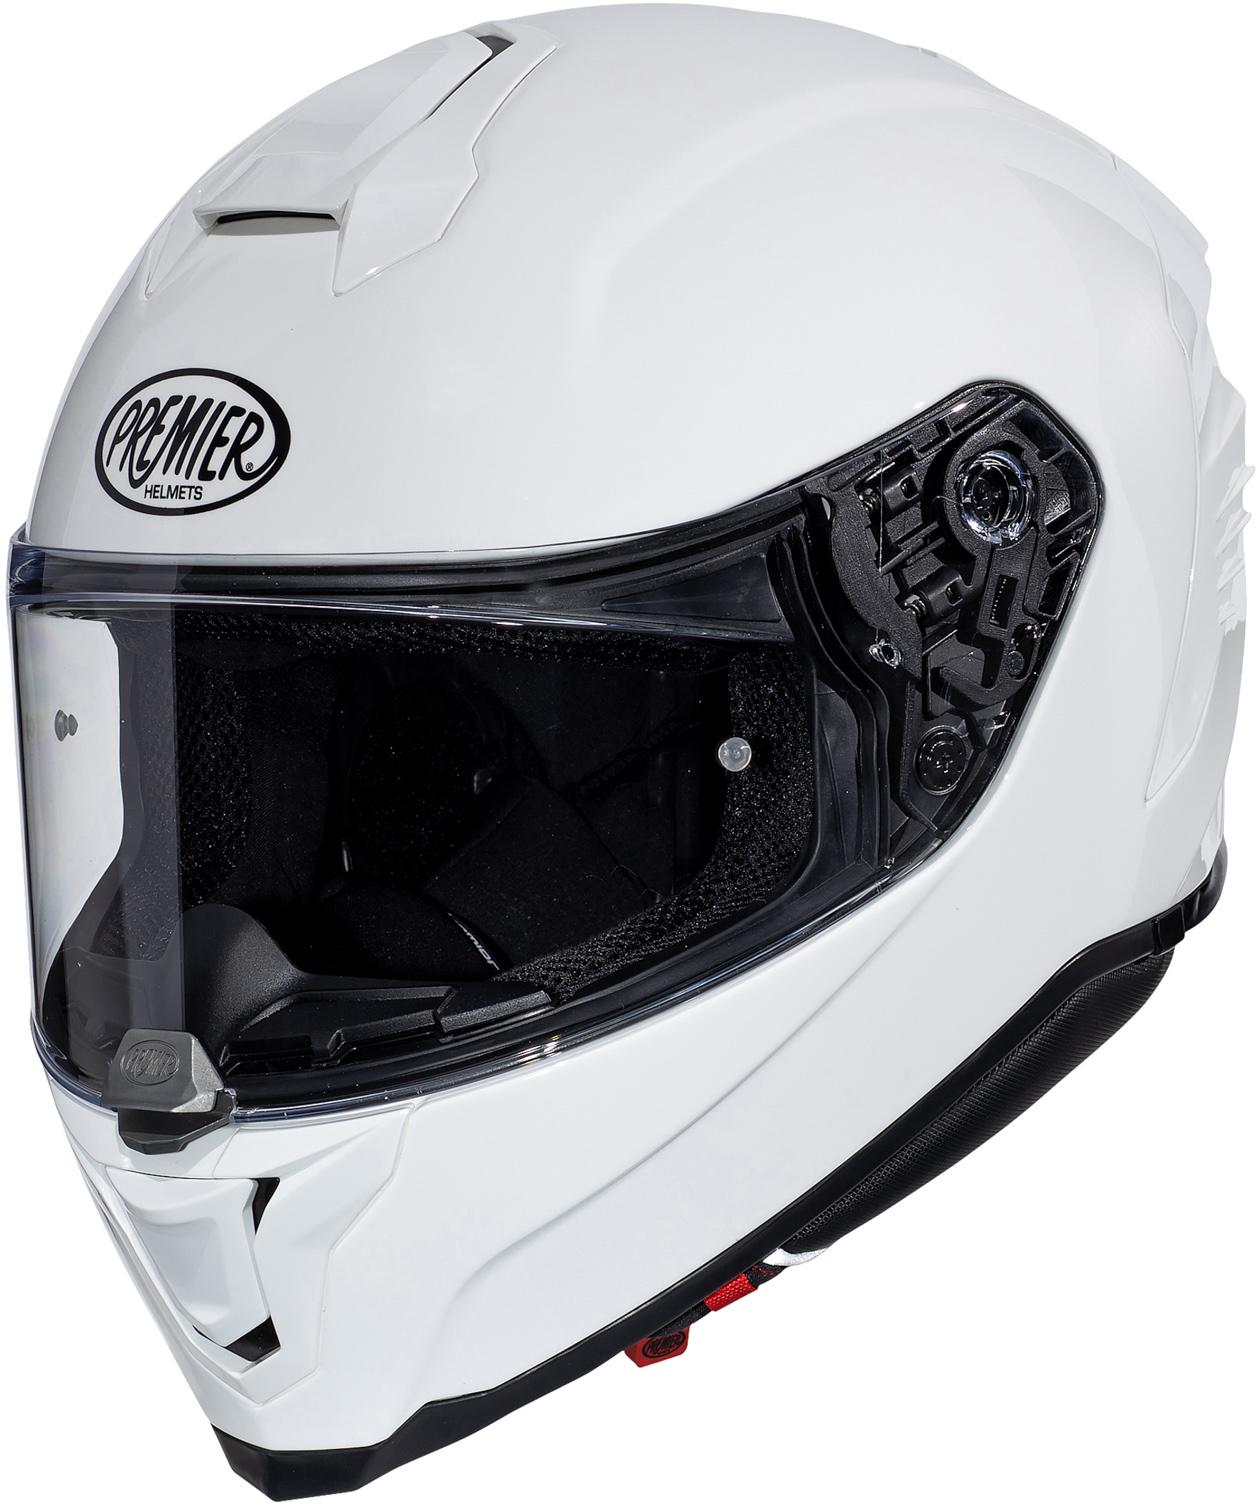 Premier Hyper Full Face Motorcycle Helmet - White, M